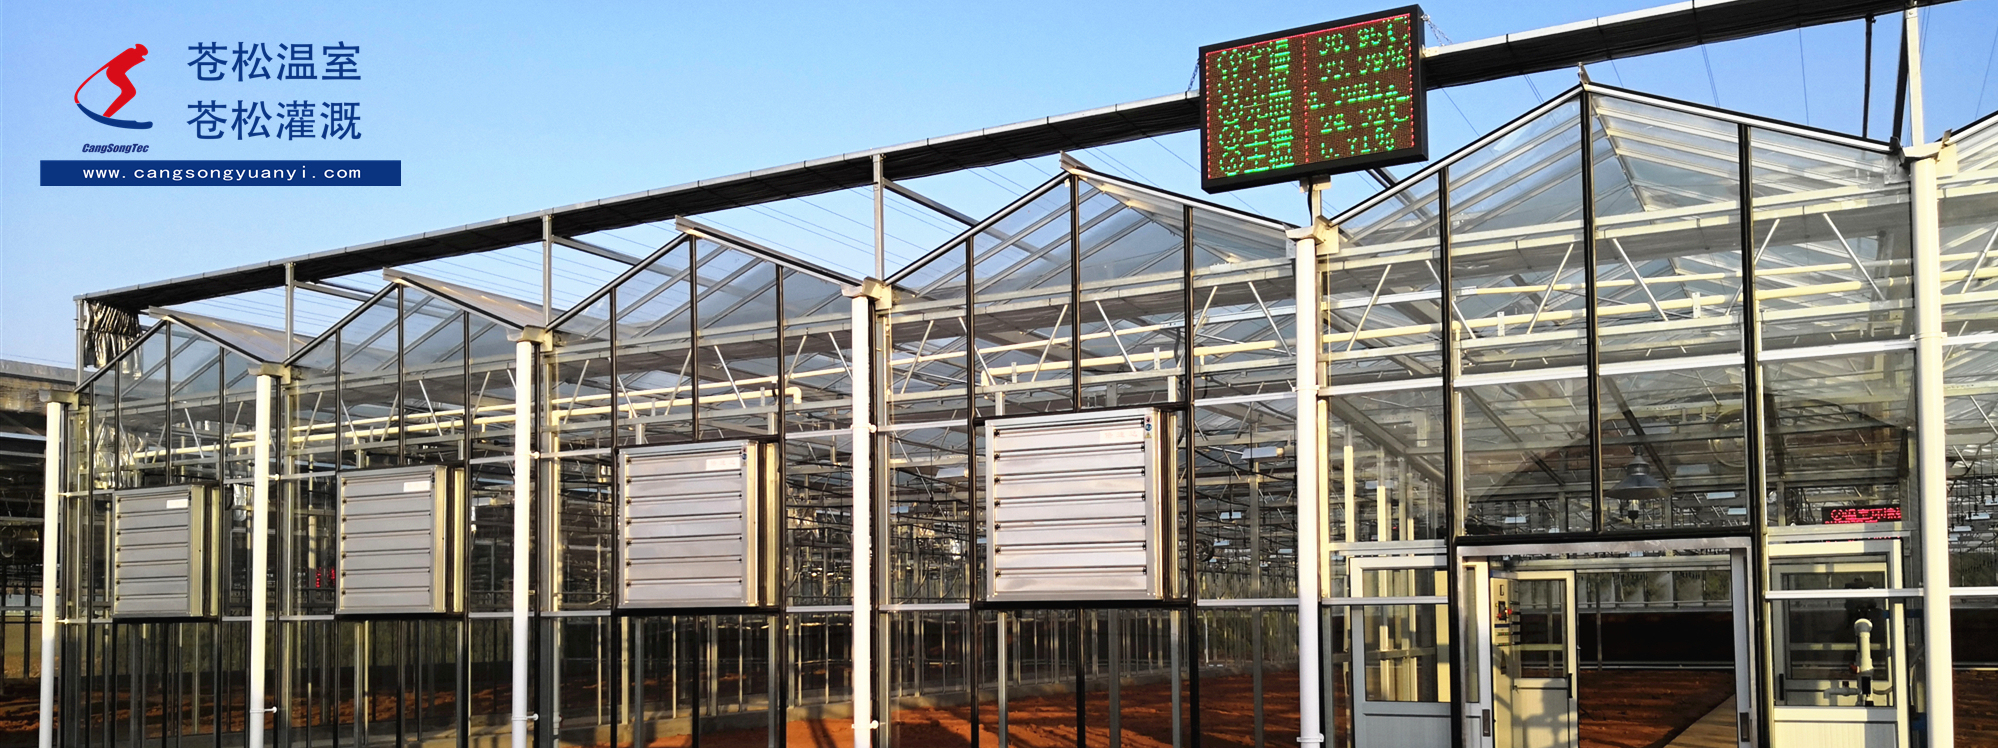 苍松温室--云南省农业农村厅马龙山地牧业科技园--物联网自控玻璃温室及灌溉